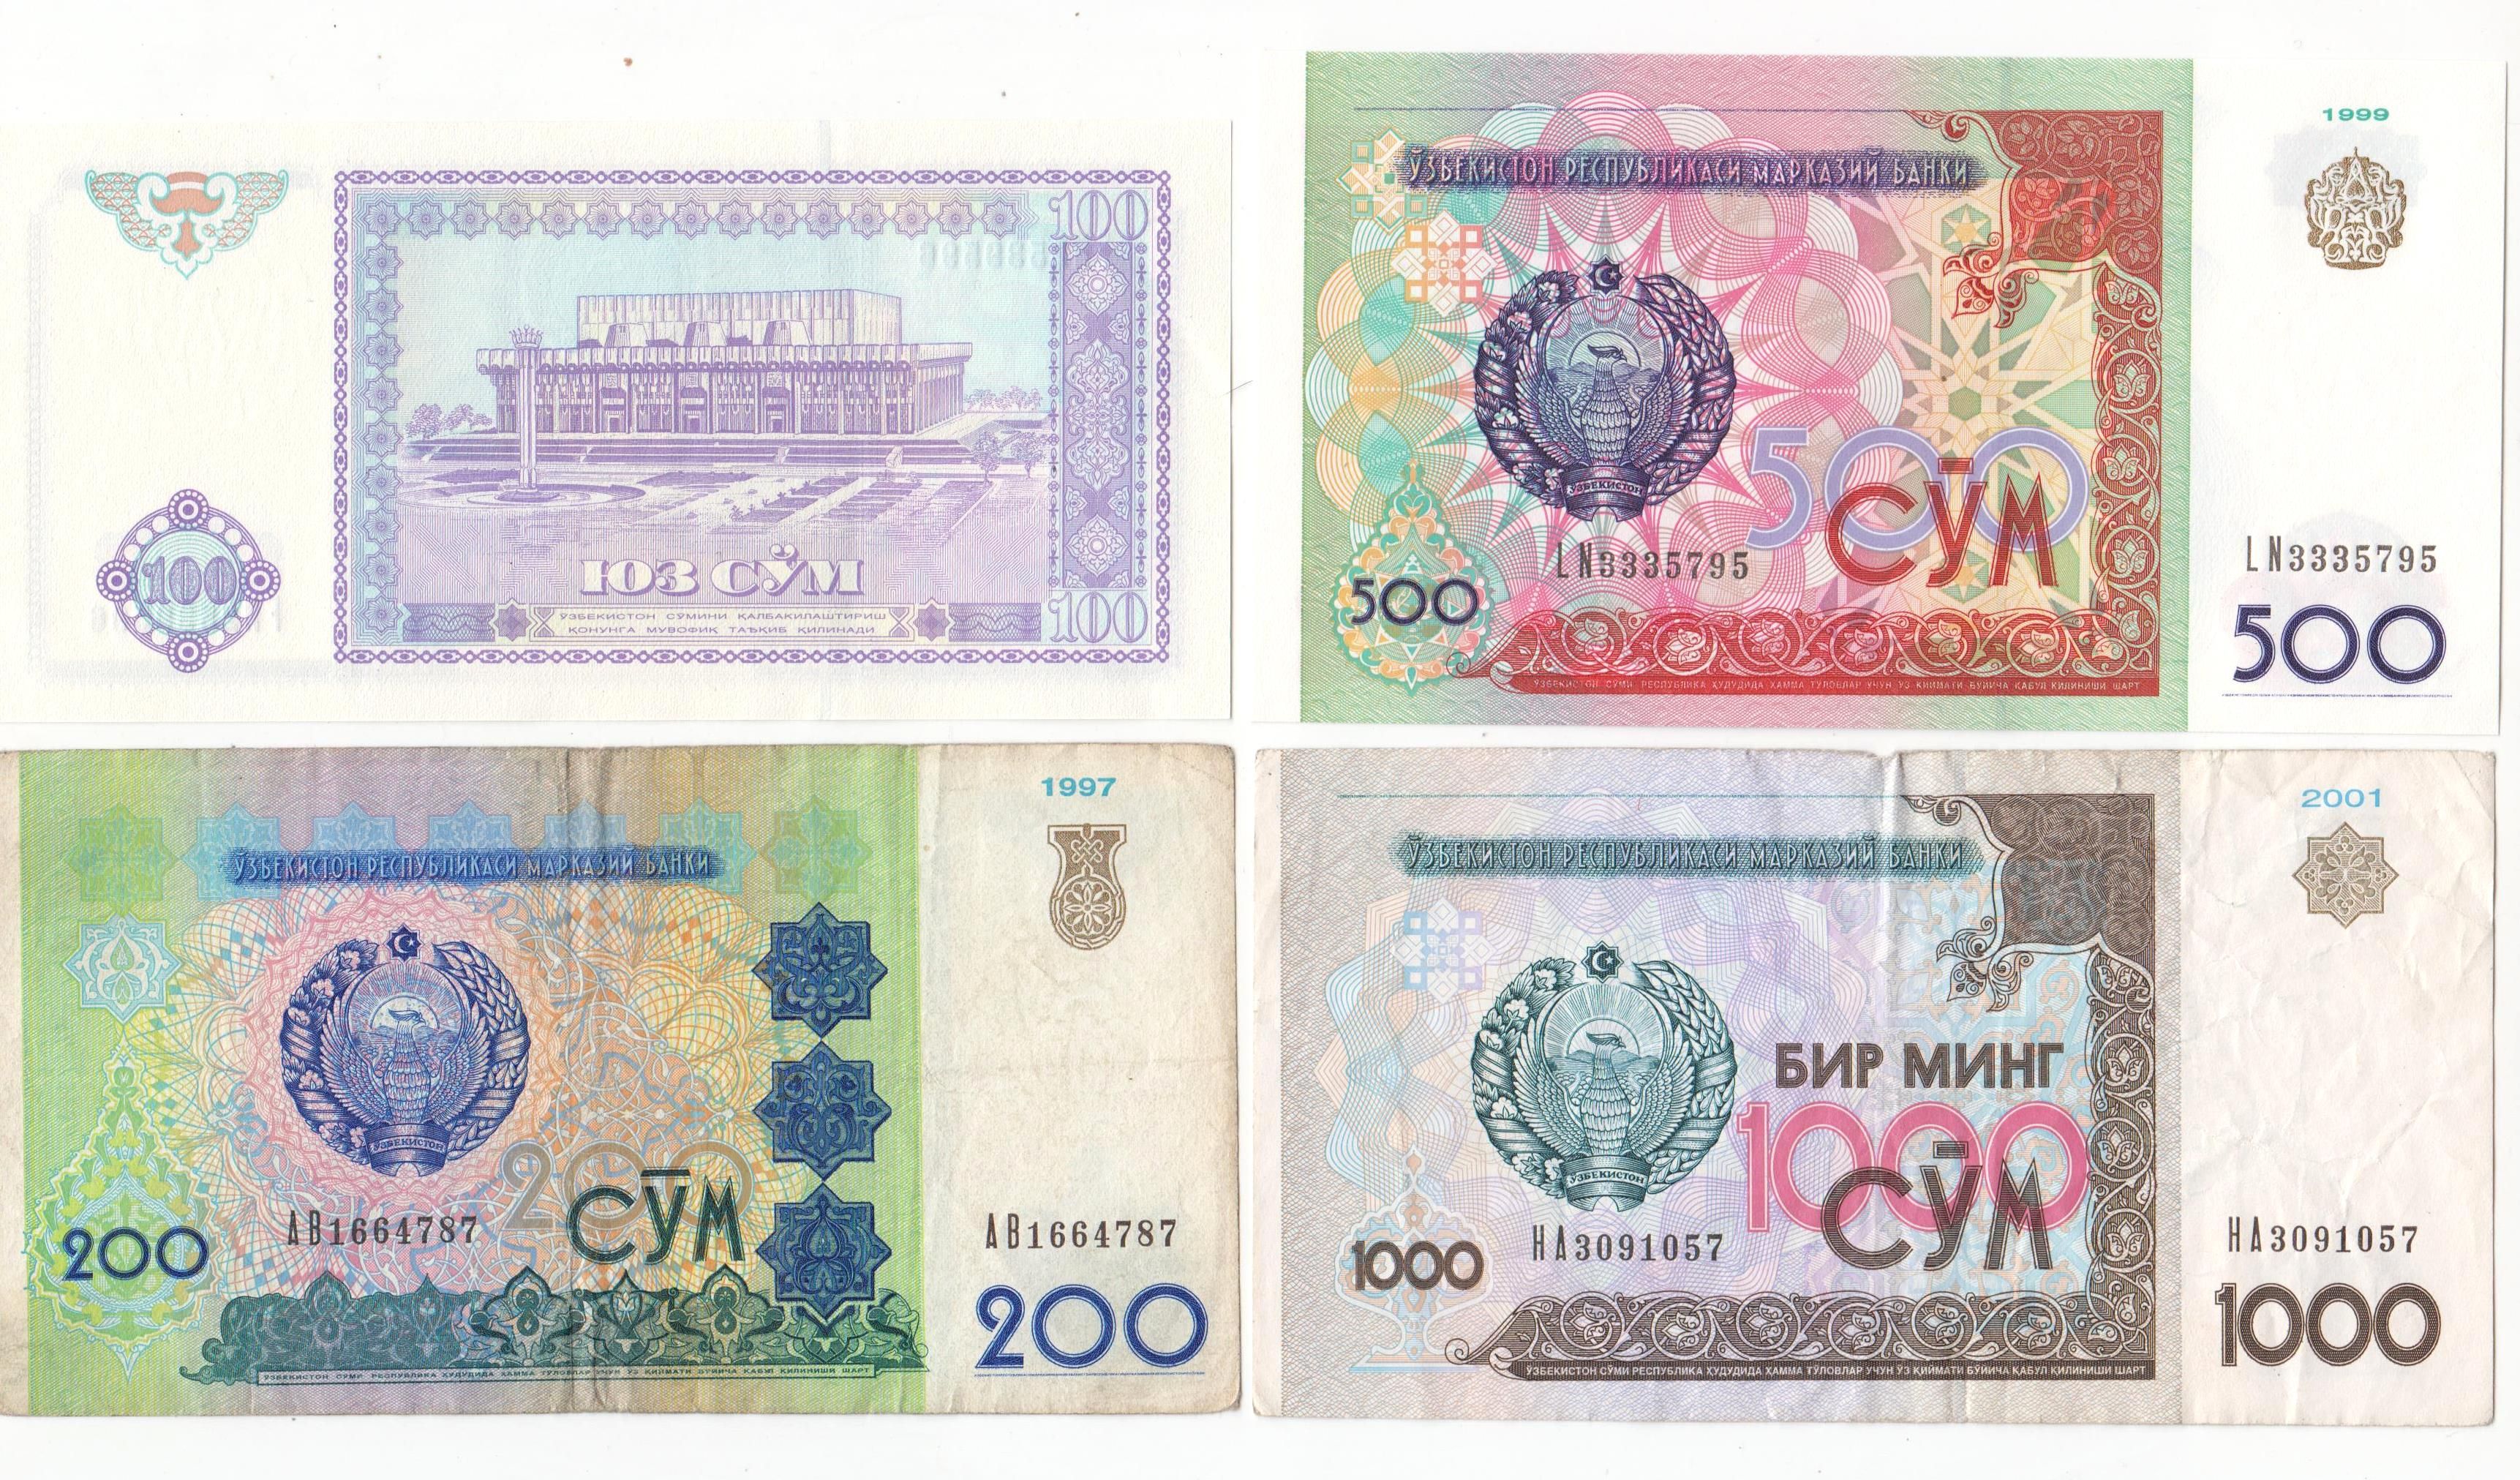 "1000 Сум 2001". Купюры Узбекистана. 200 Тысяч сум купюра.